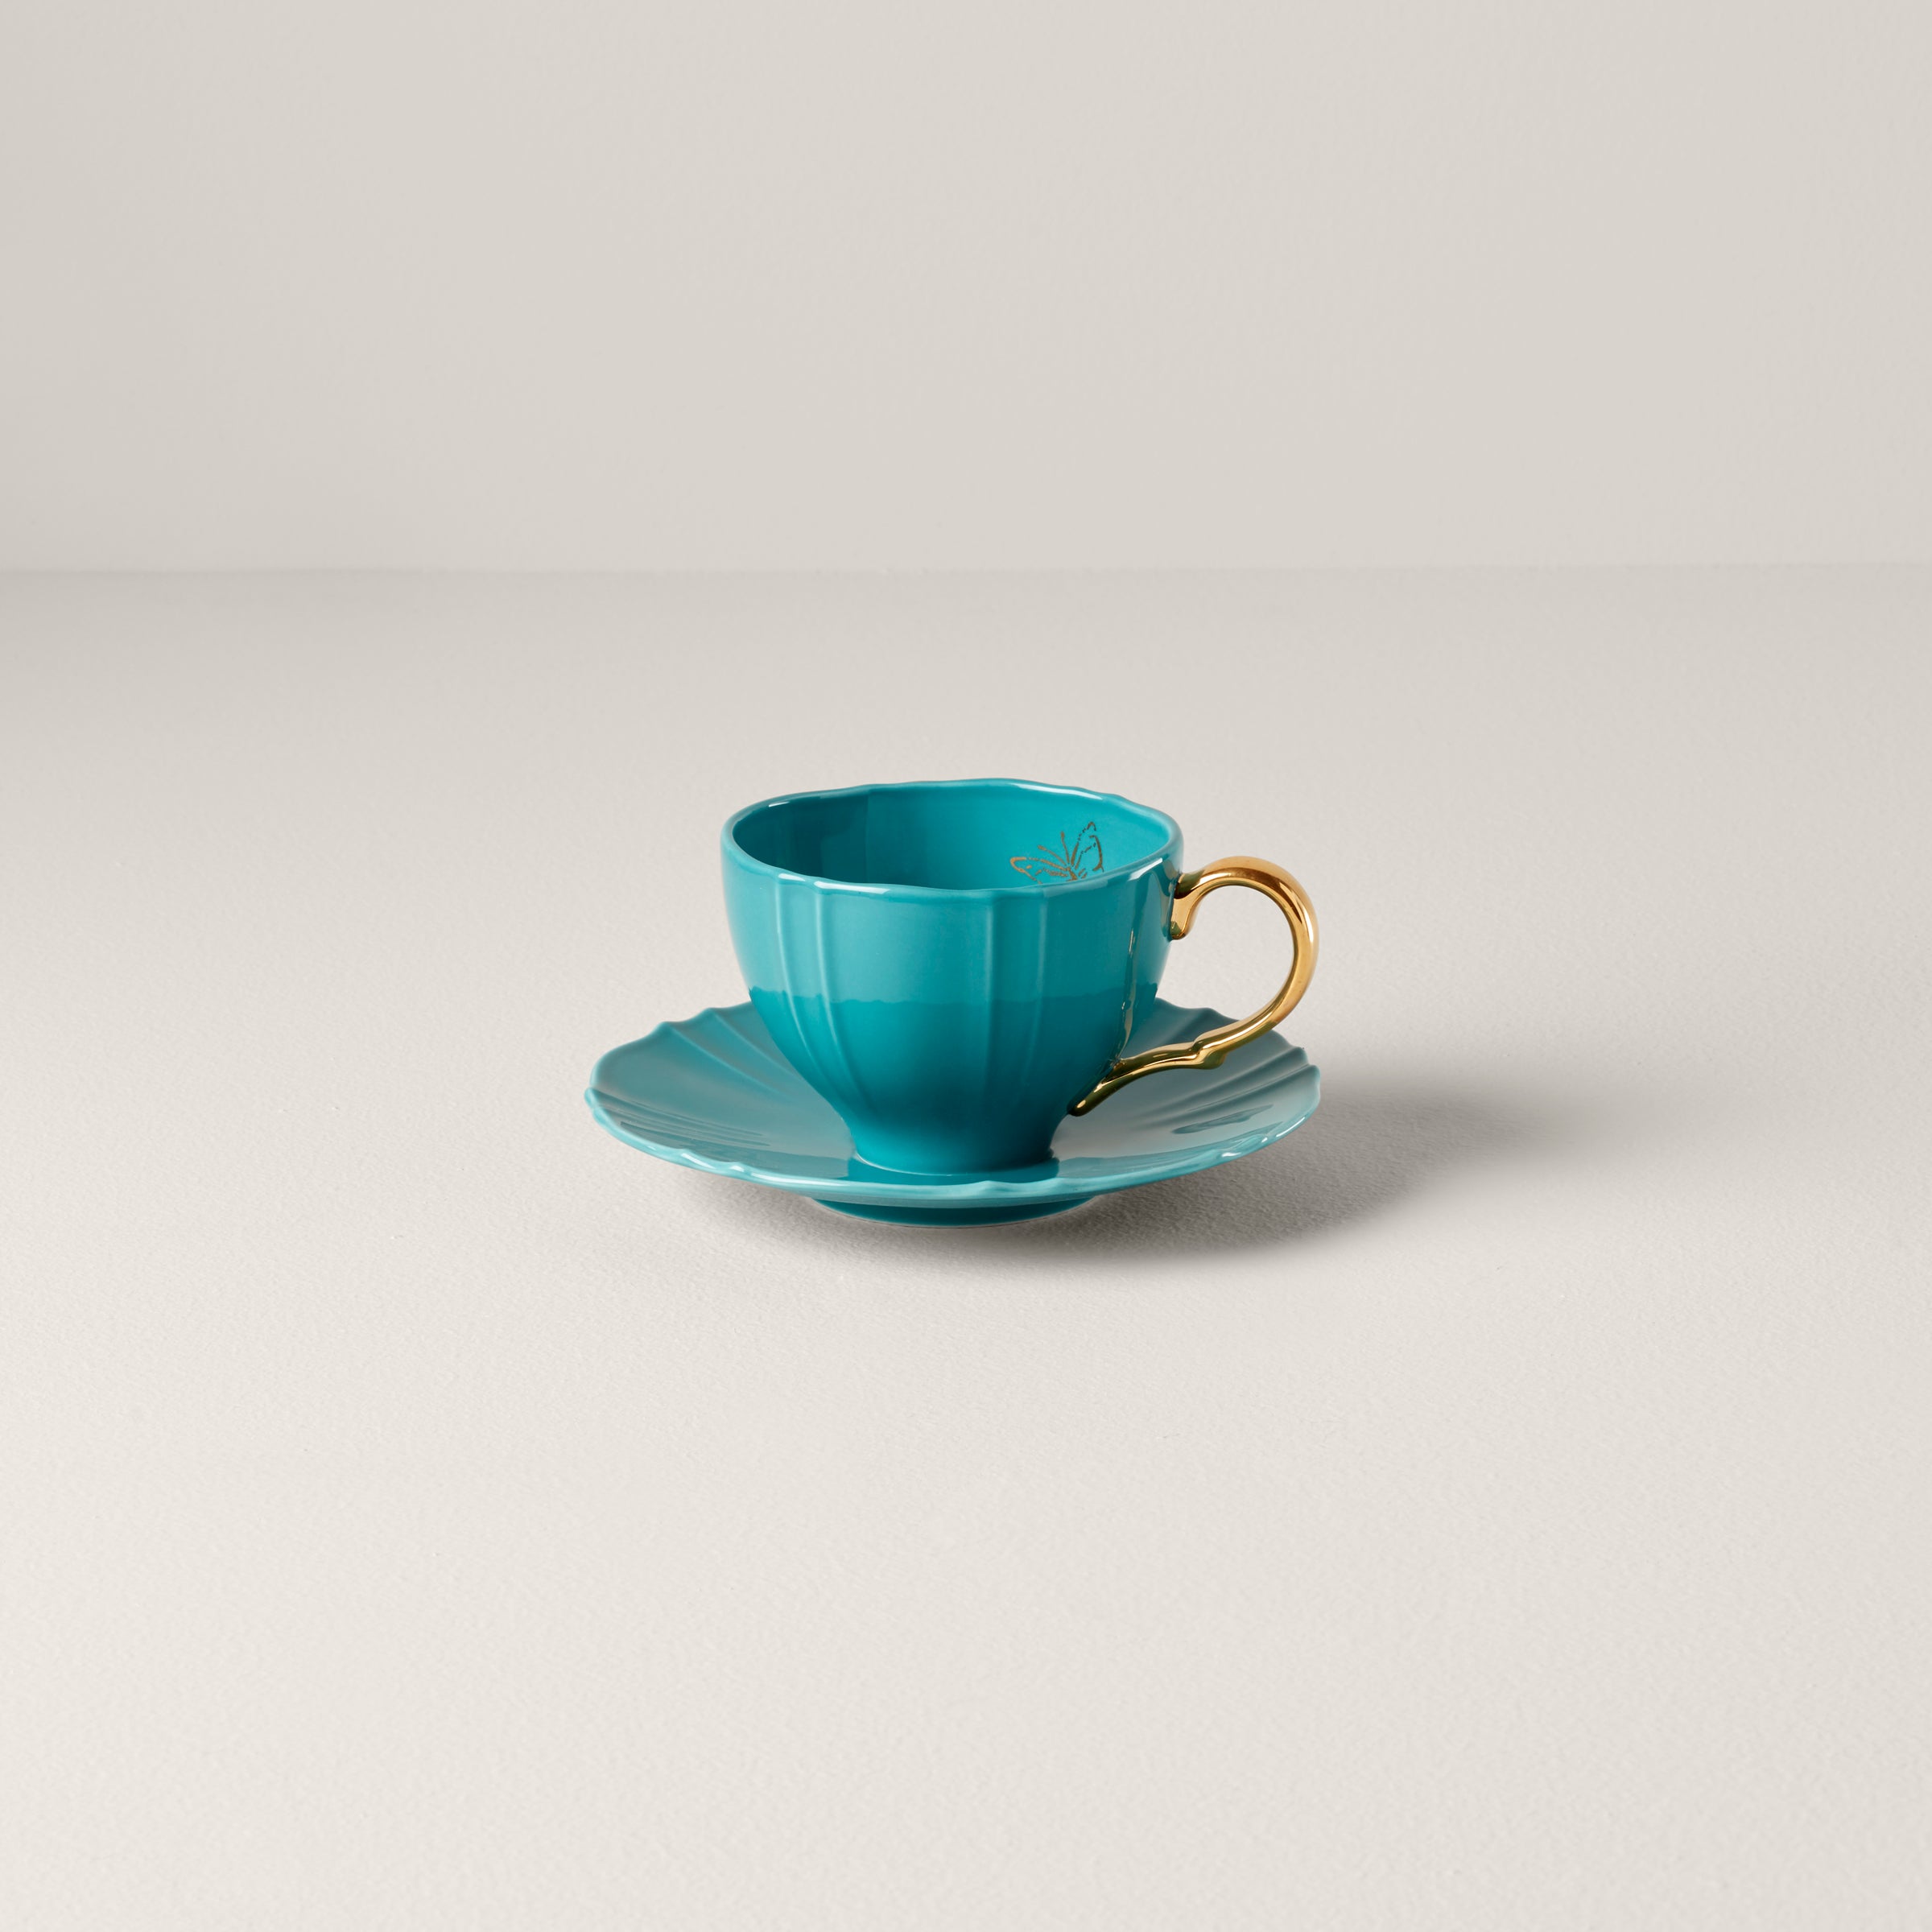 Teal coffee mug aesthetic, turquoise